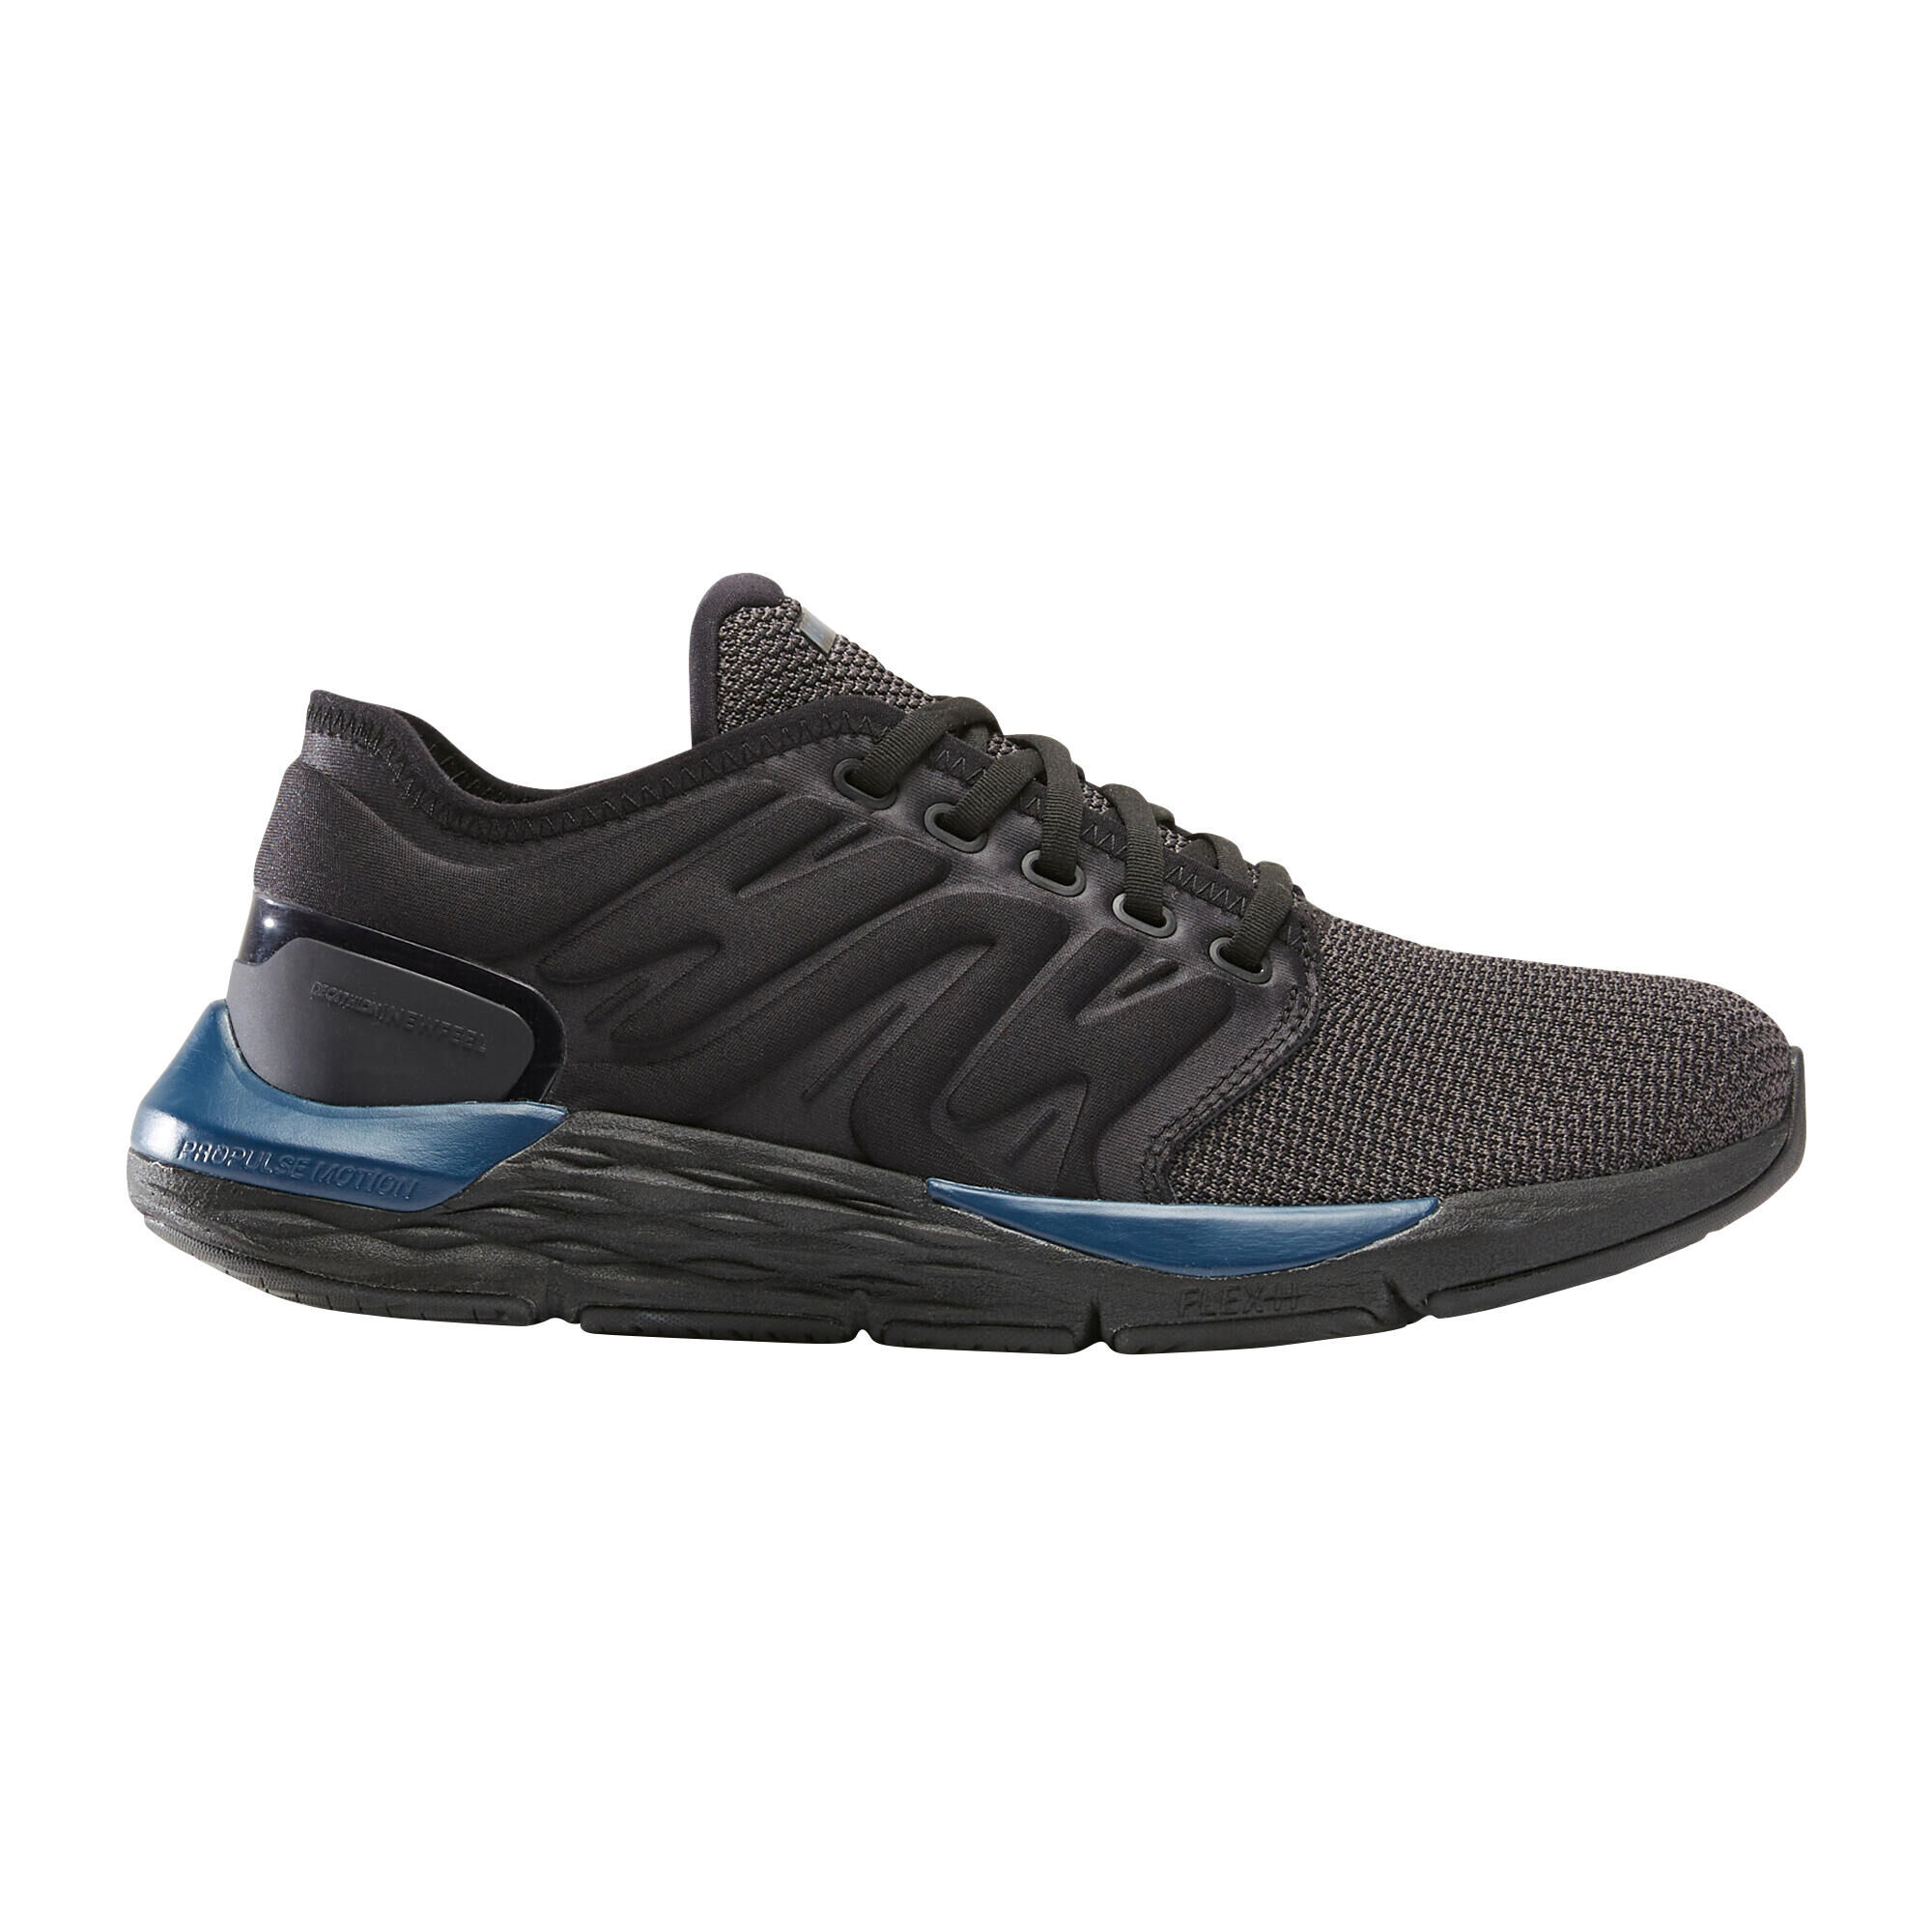 NEWFEEL Fitness Walking Shoes Sportwalk Comfort - black/blue